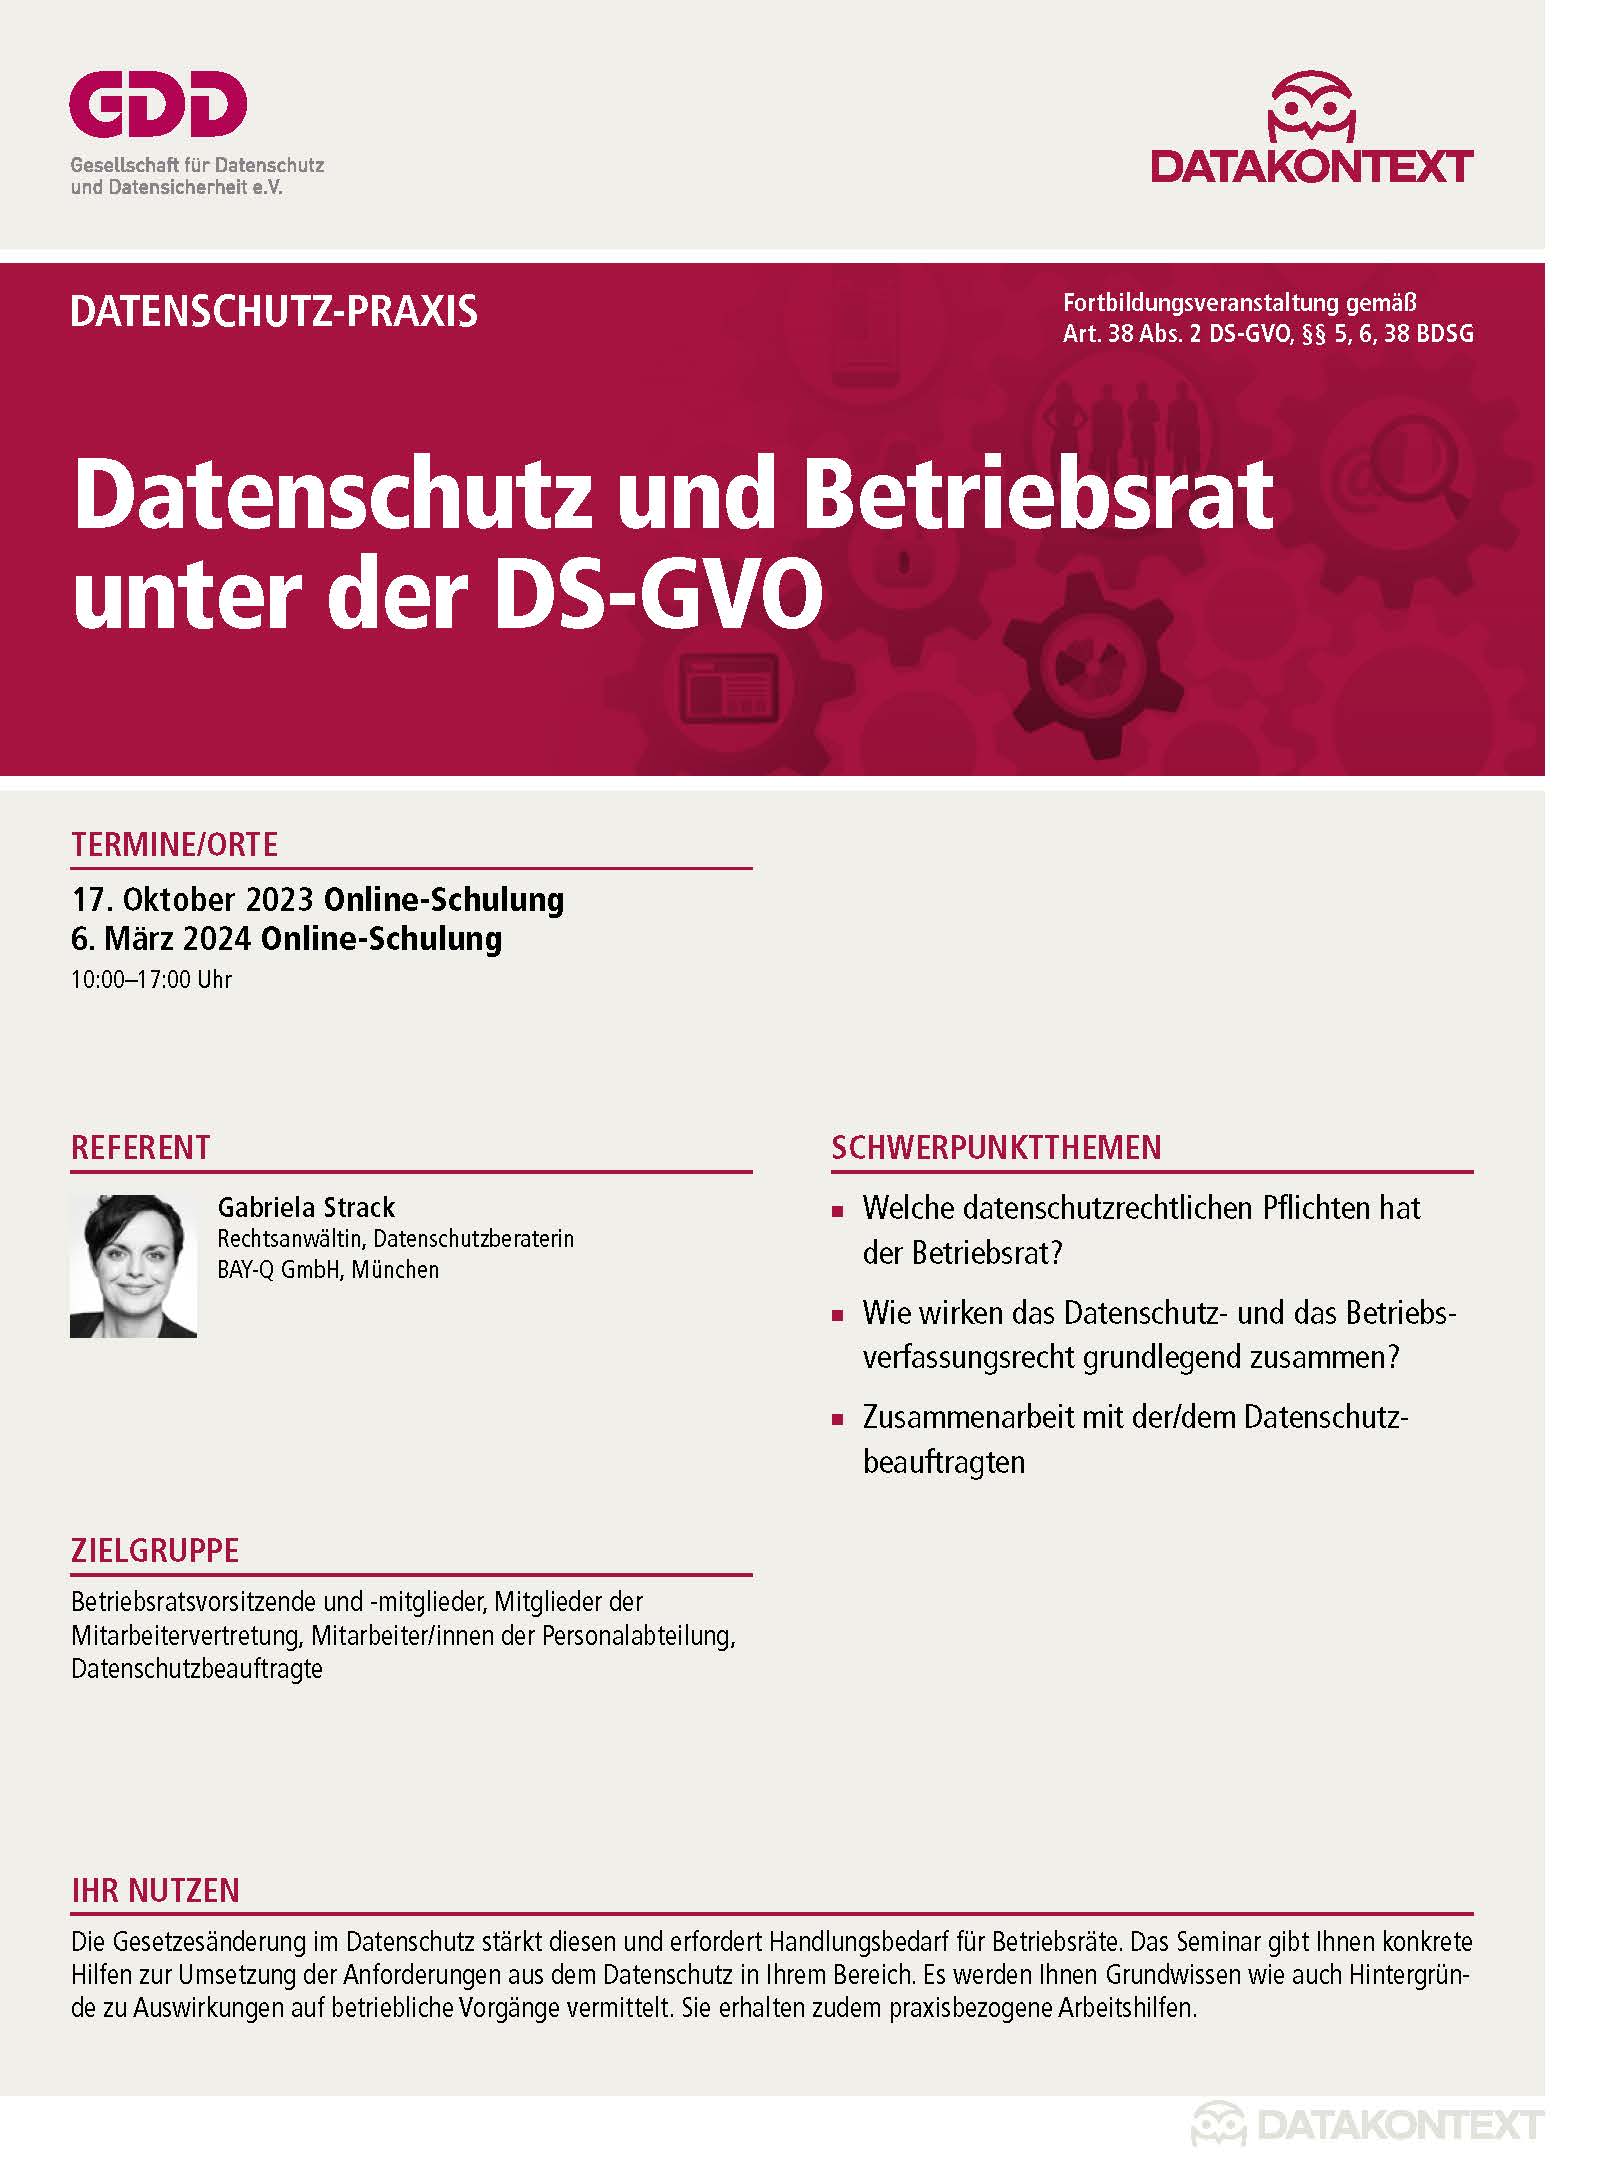 Datenschutz und Betriebsrat unter der DS-GVO